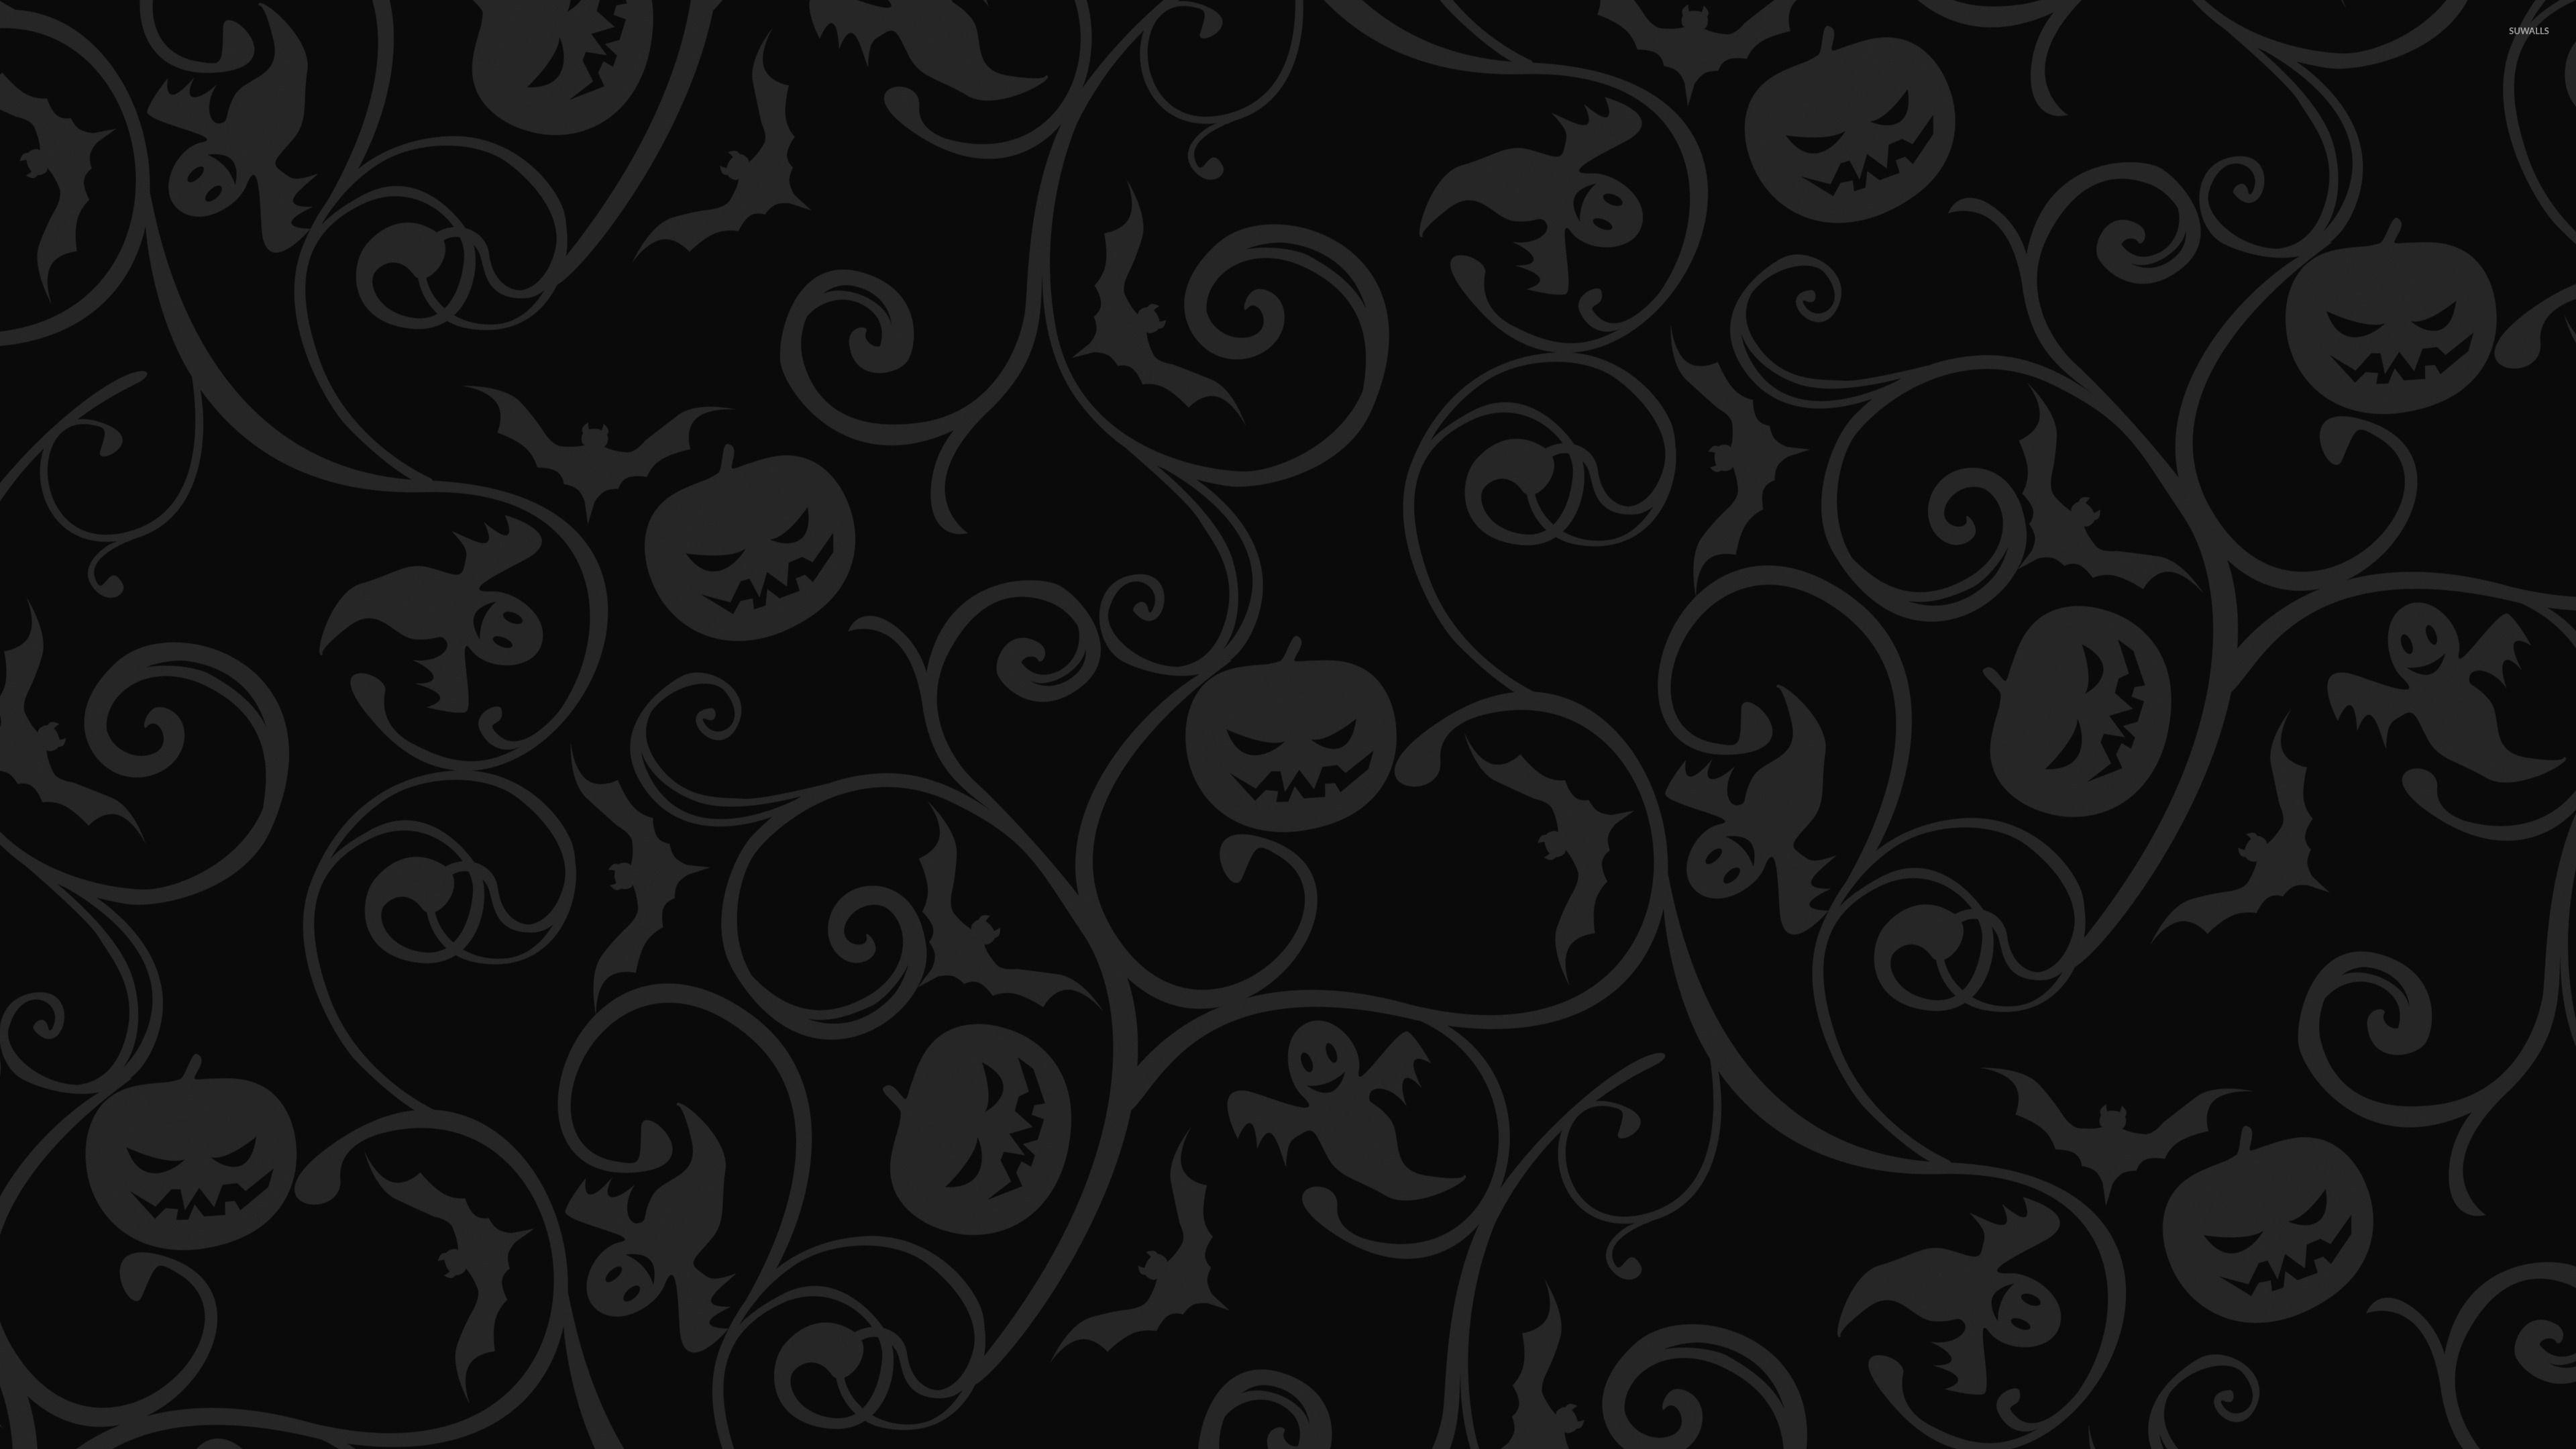 Dark Halloween Wallpapers - Top Free Dark Halloween Backgrounds ...